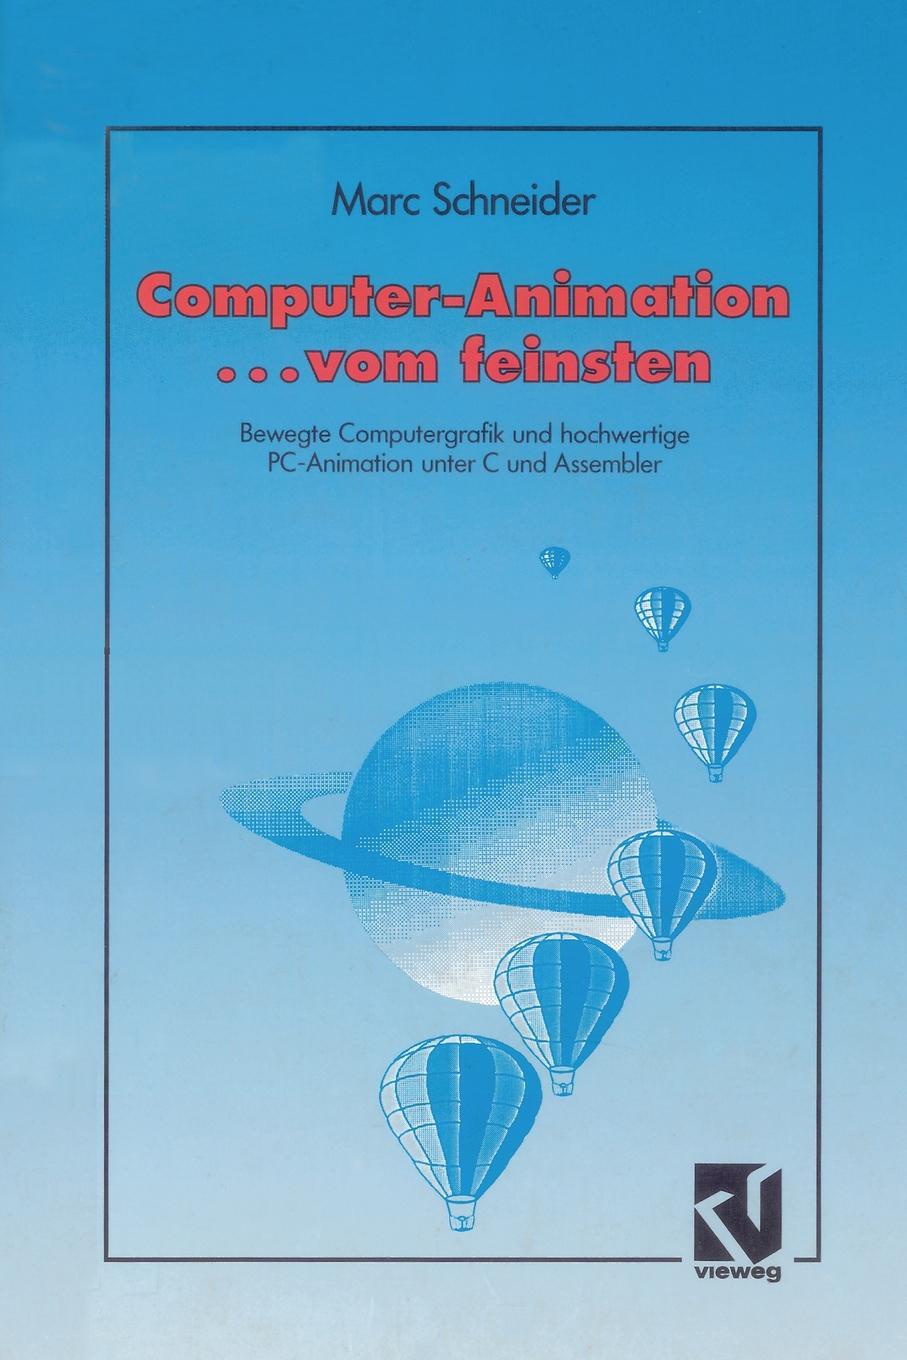 Computer Animation ... vom feinsten. Bewegte Computergrafik und hochwertige PC-Animation unter C und Assembler